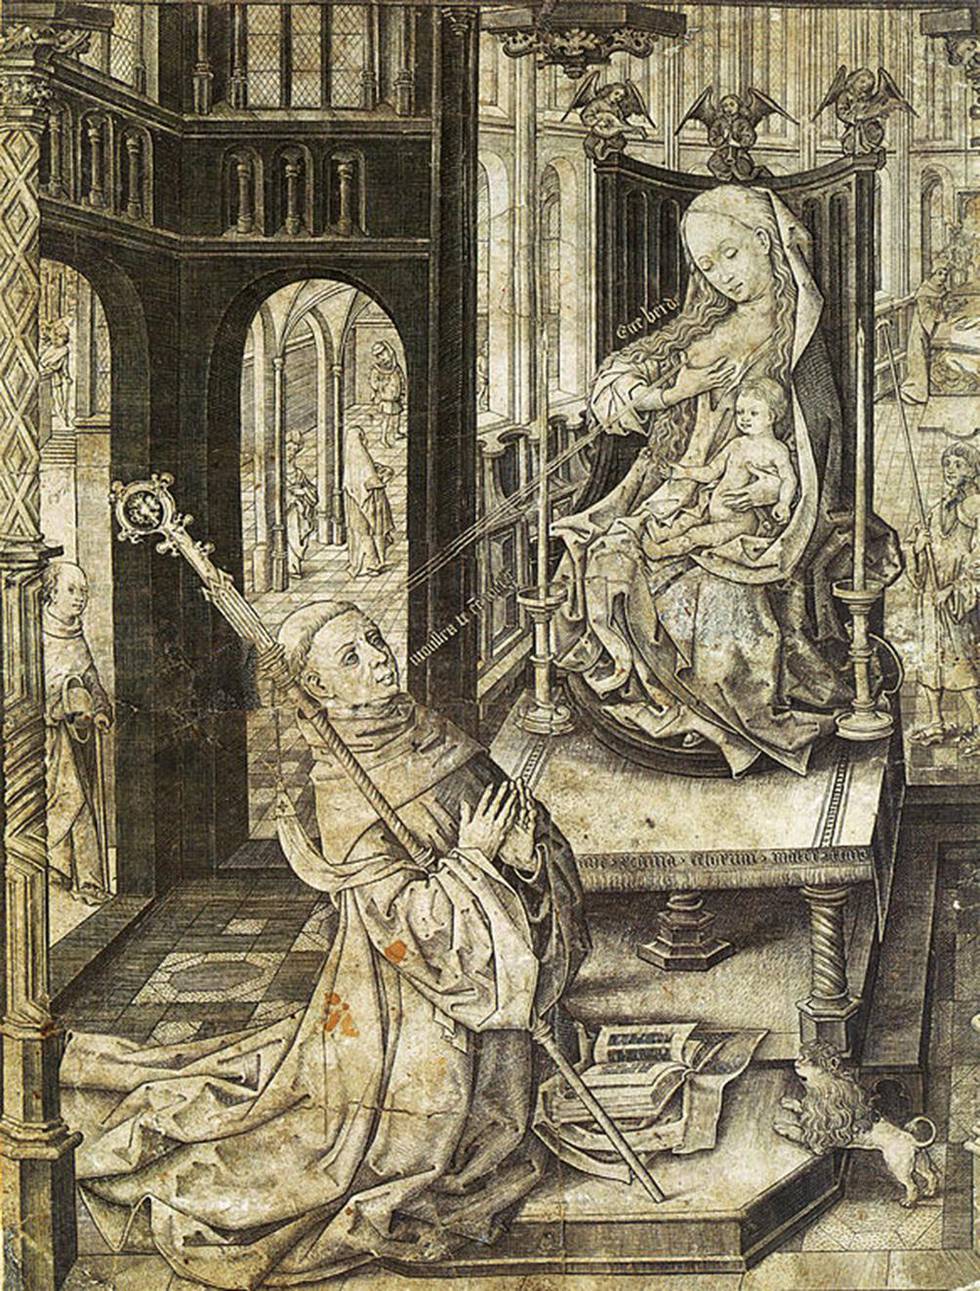 Gravering fra ca. 1480 som viser legendehistorien om St. Bernard av Clairvaux som får morsmelk fra jomfru Maria sprutet inn i sitt eget øye, og blir helbredet.